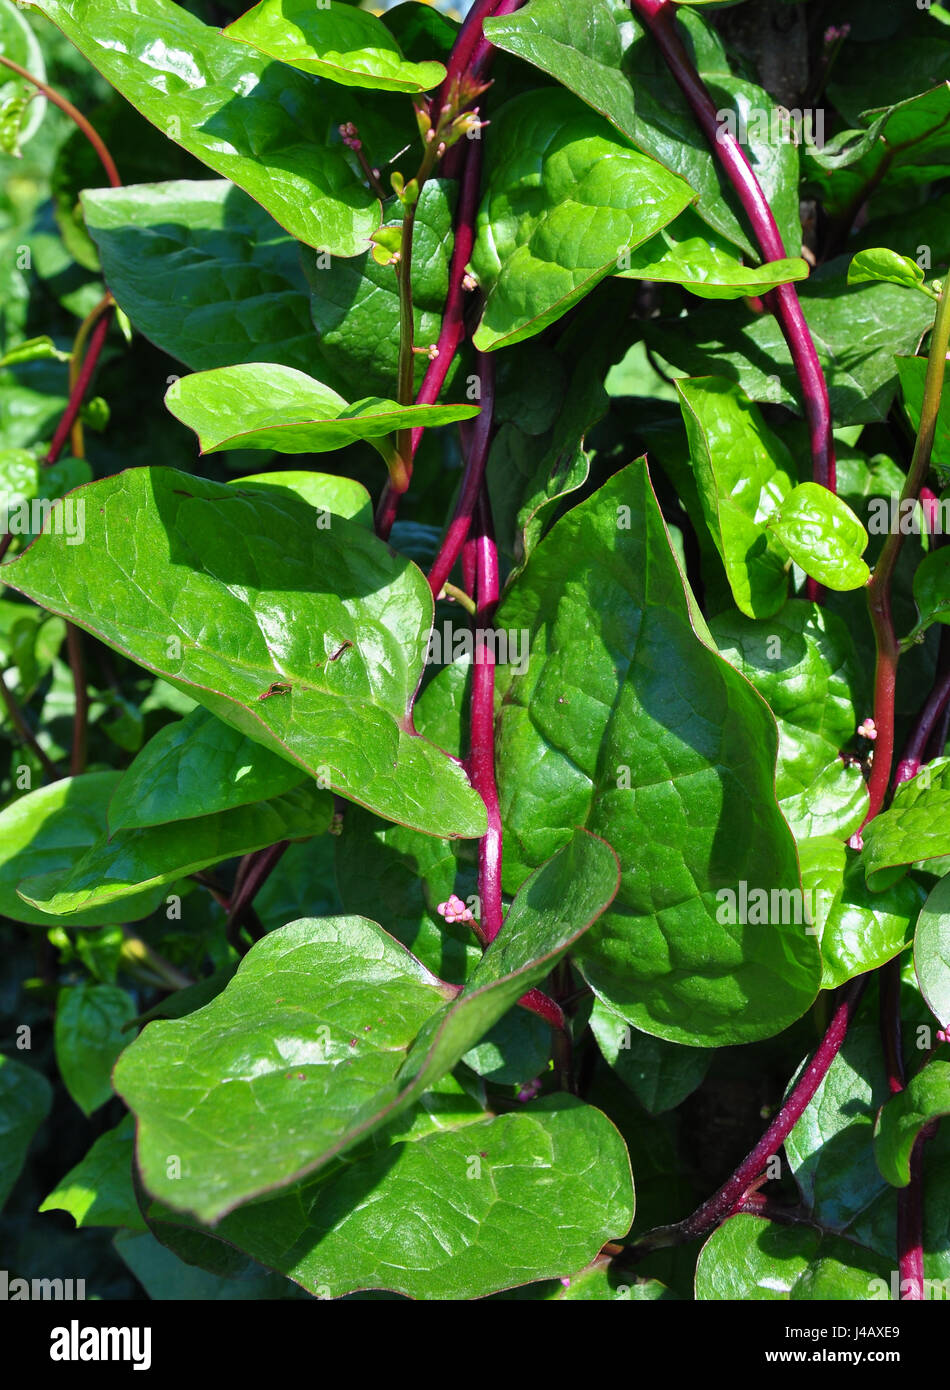 Malabar spinach (Basella alba) Stock Photo